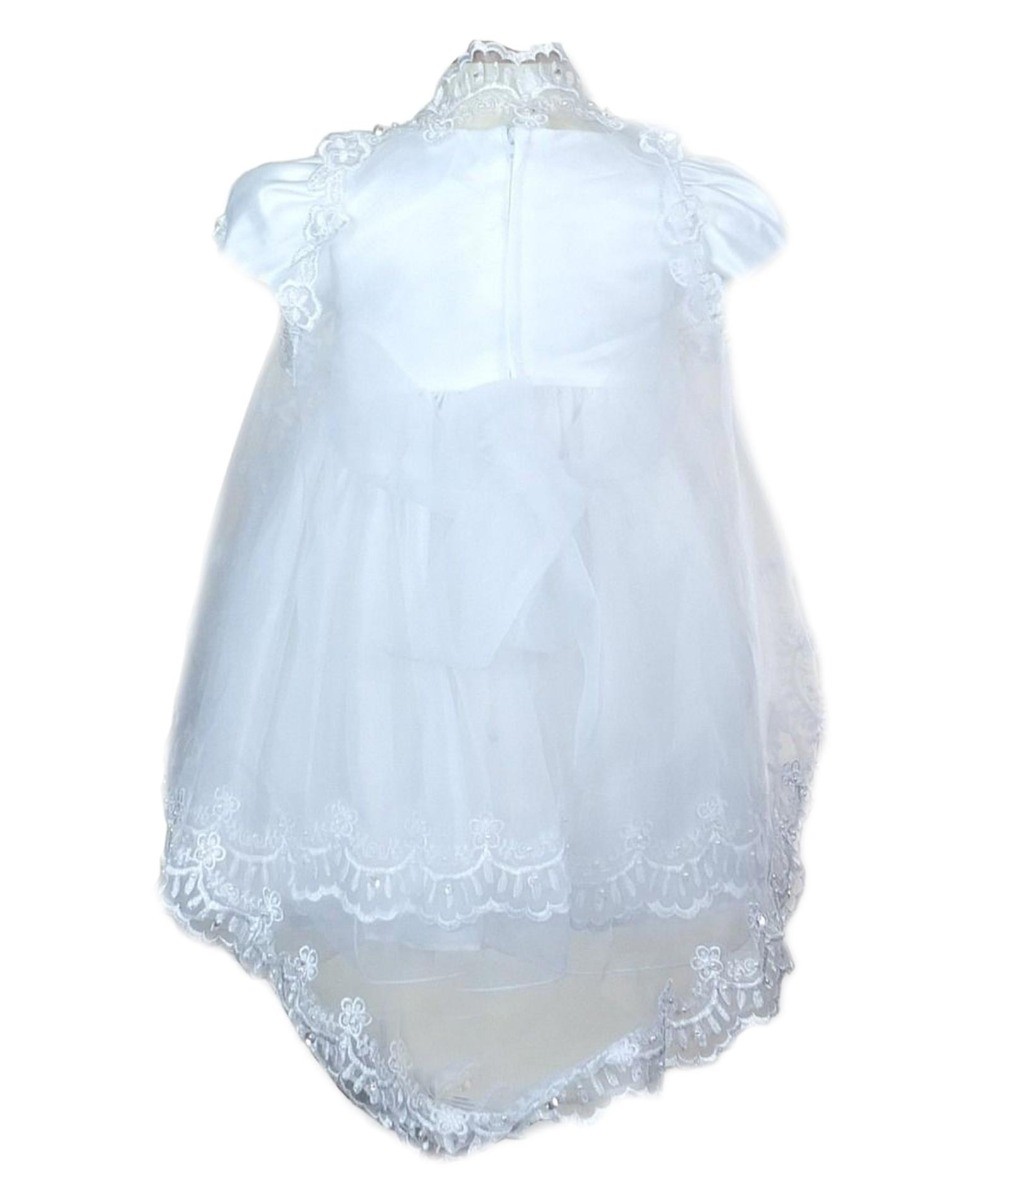 Baby Mädchen Besticktes Taufkleid Set - Weiß